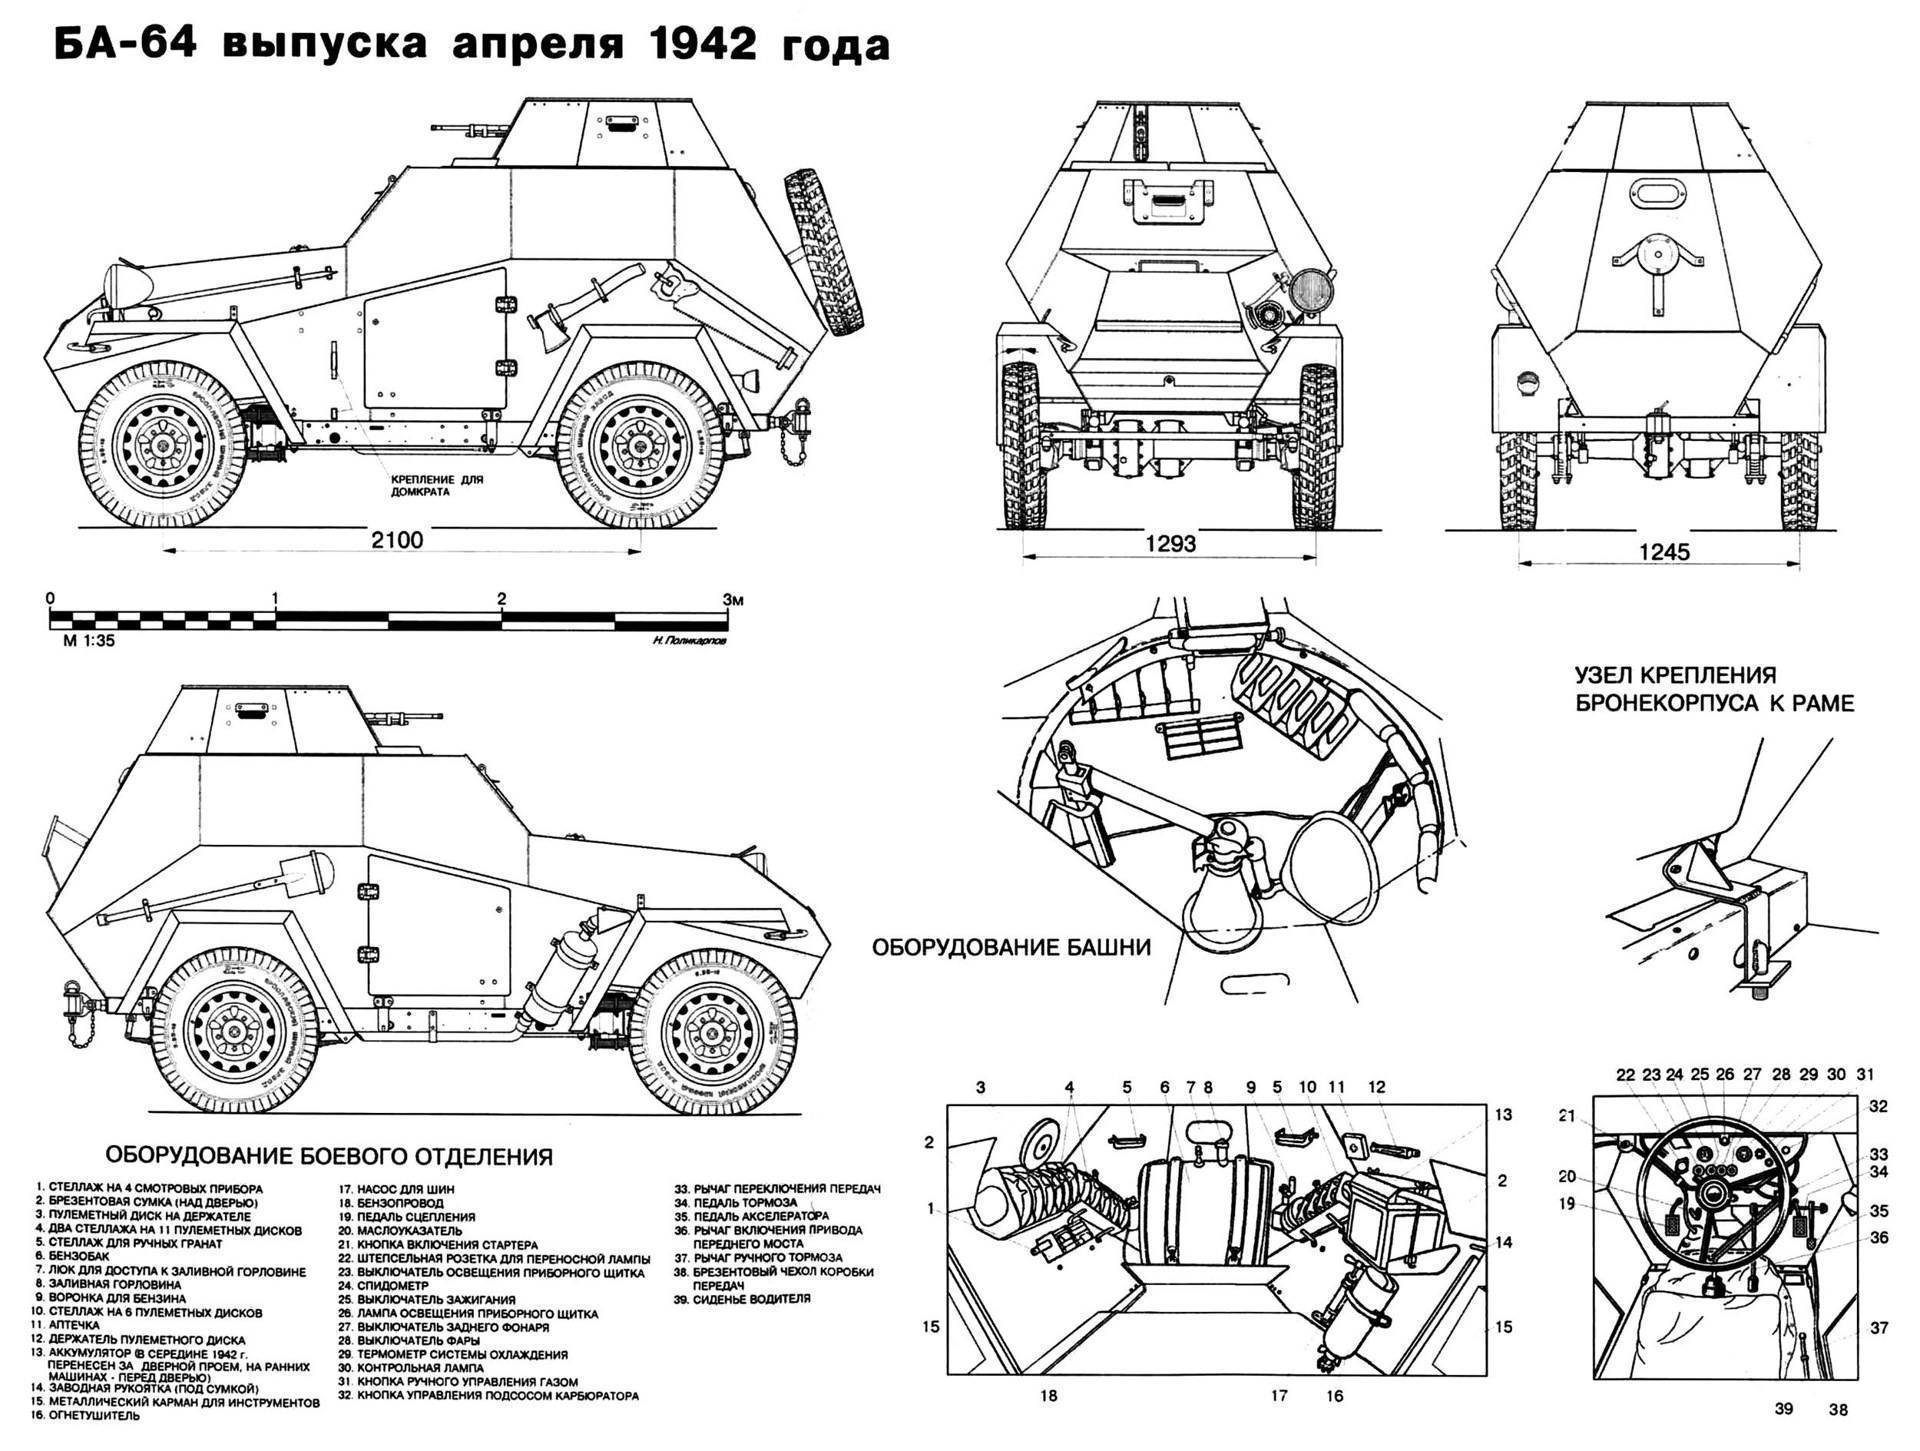 Бронеавтомобиль ба-64 двигатель, вес, размеры, вооружение